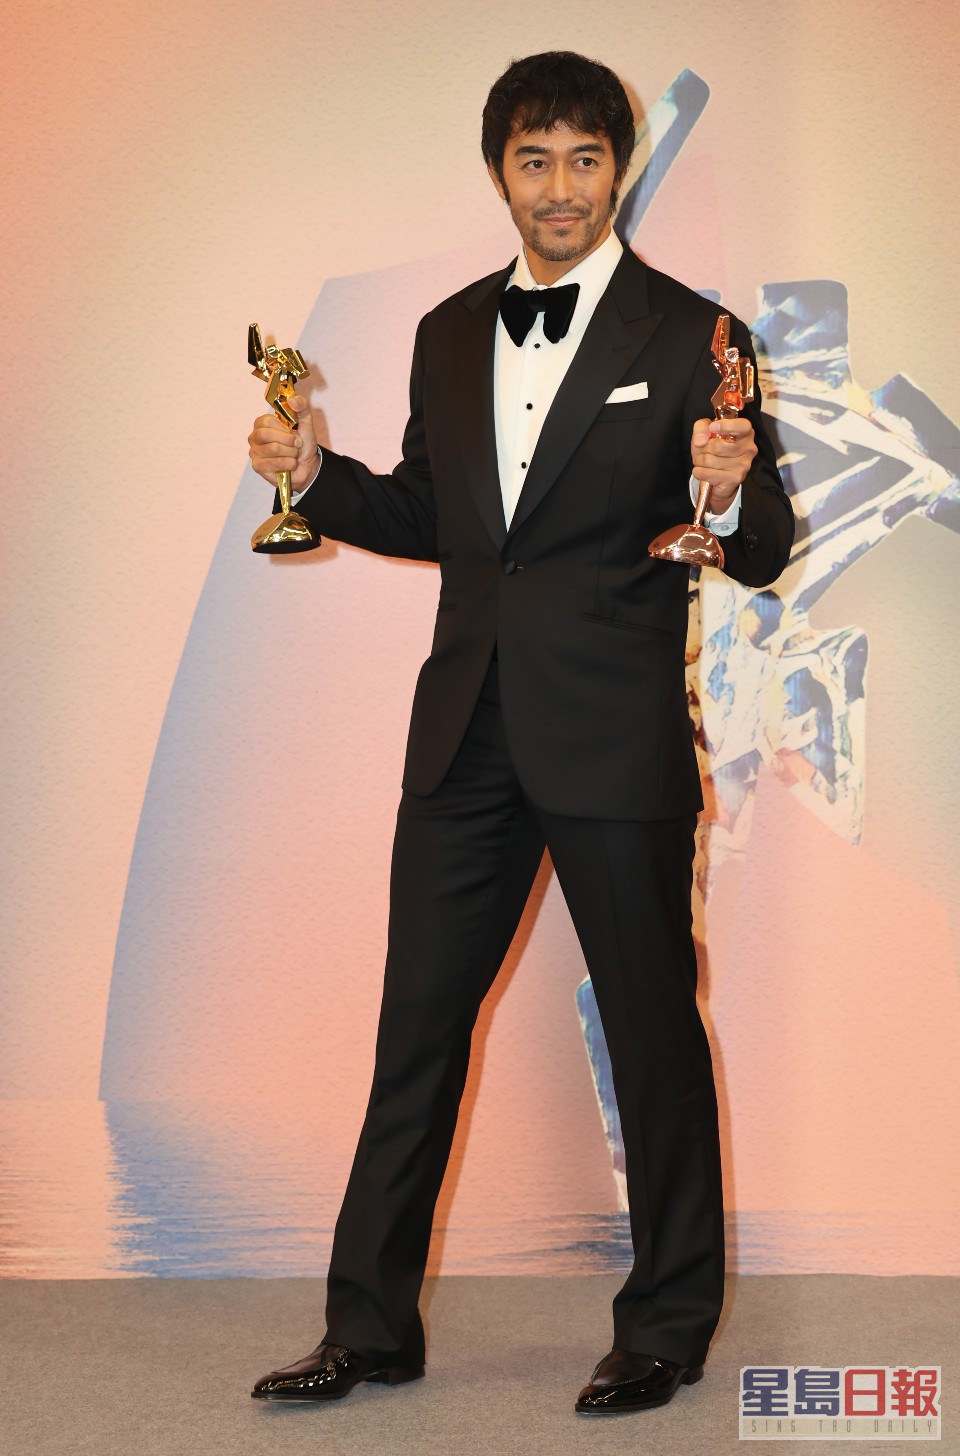 日本巨星阿部宽在获颁「卓越亚洲电影人大奖」及「最佳衣著奖」。